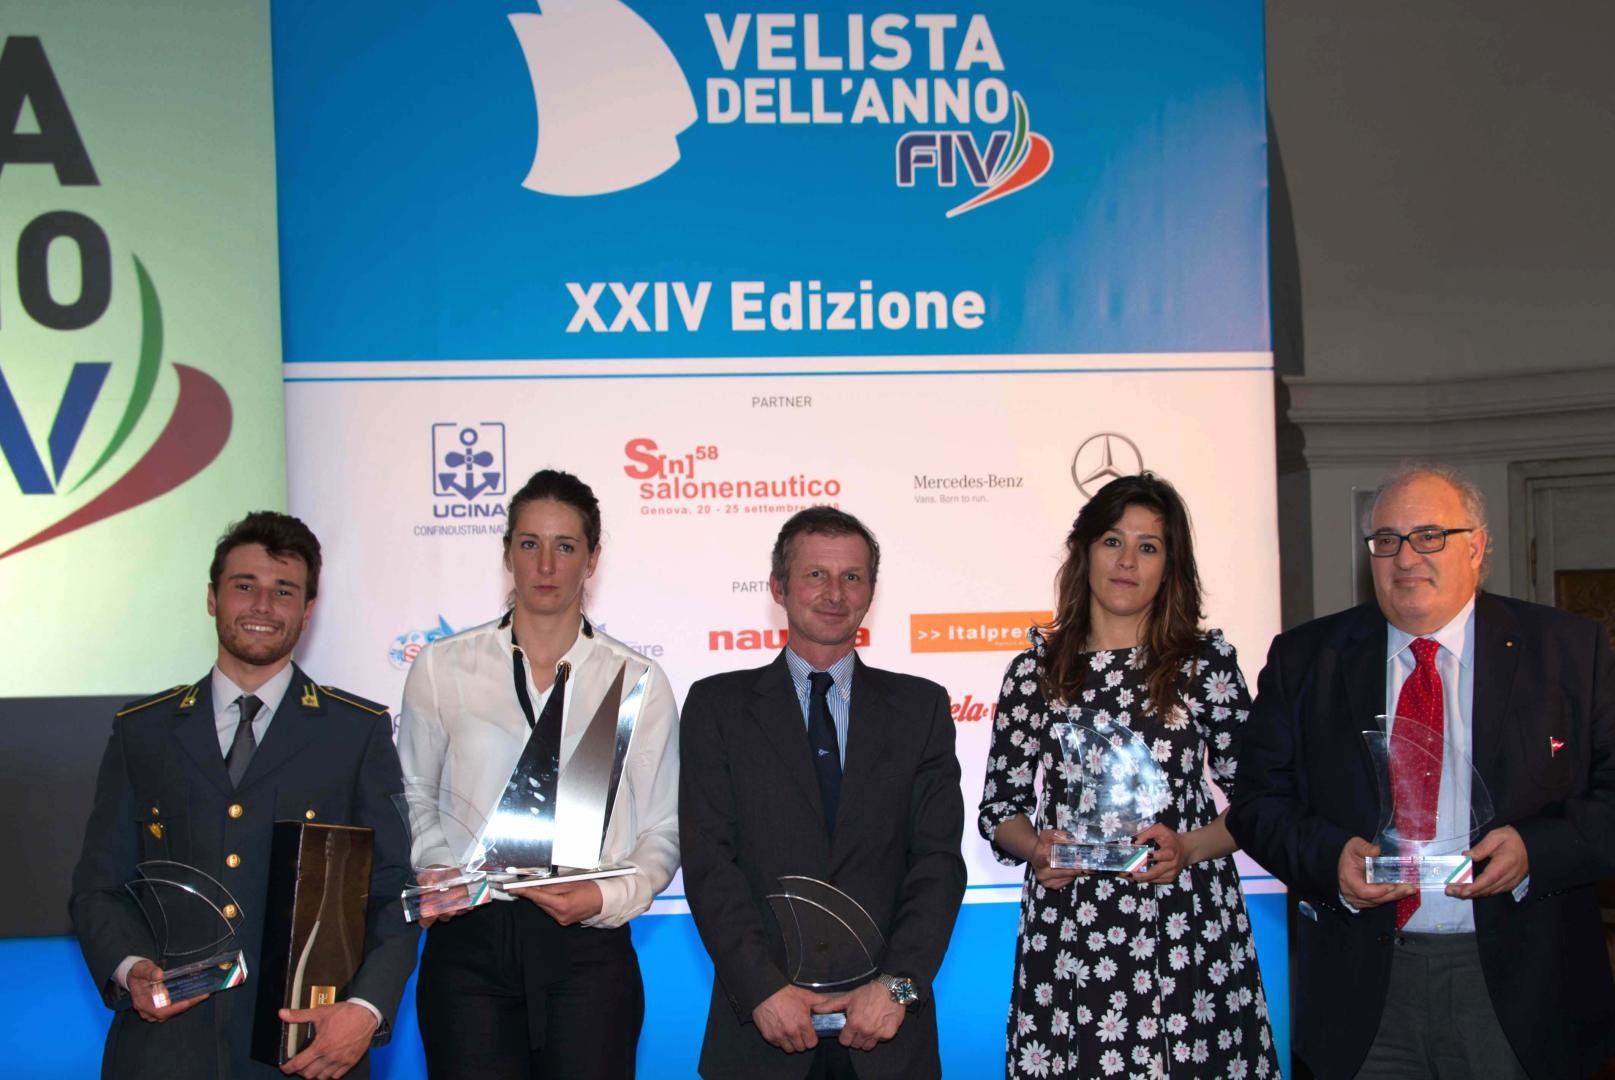 Velista dell'Anno FIV: I vincitori dei premi in gruppo